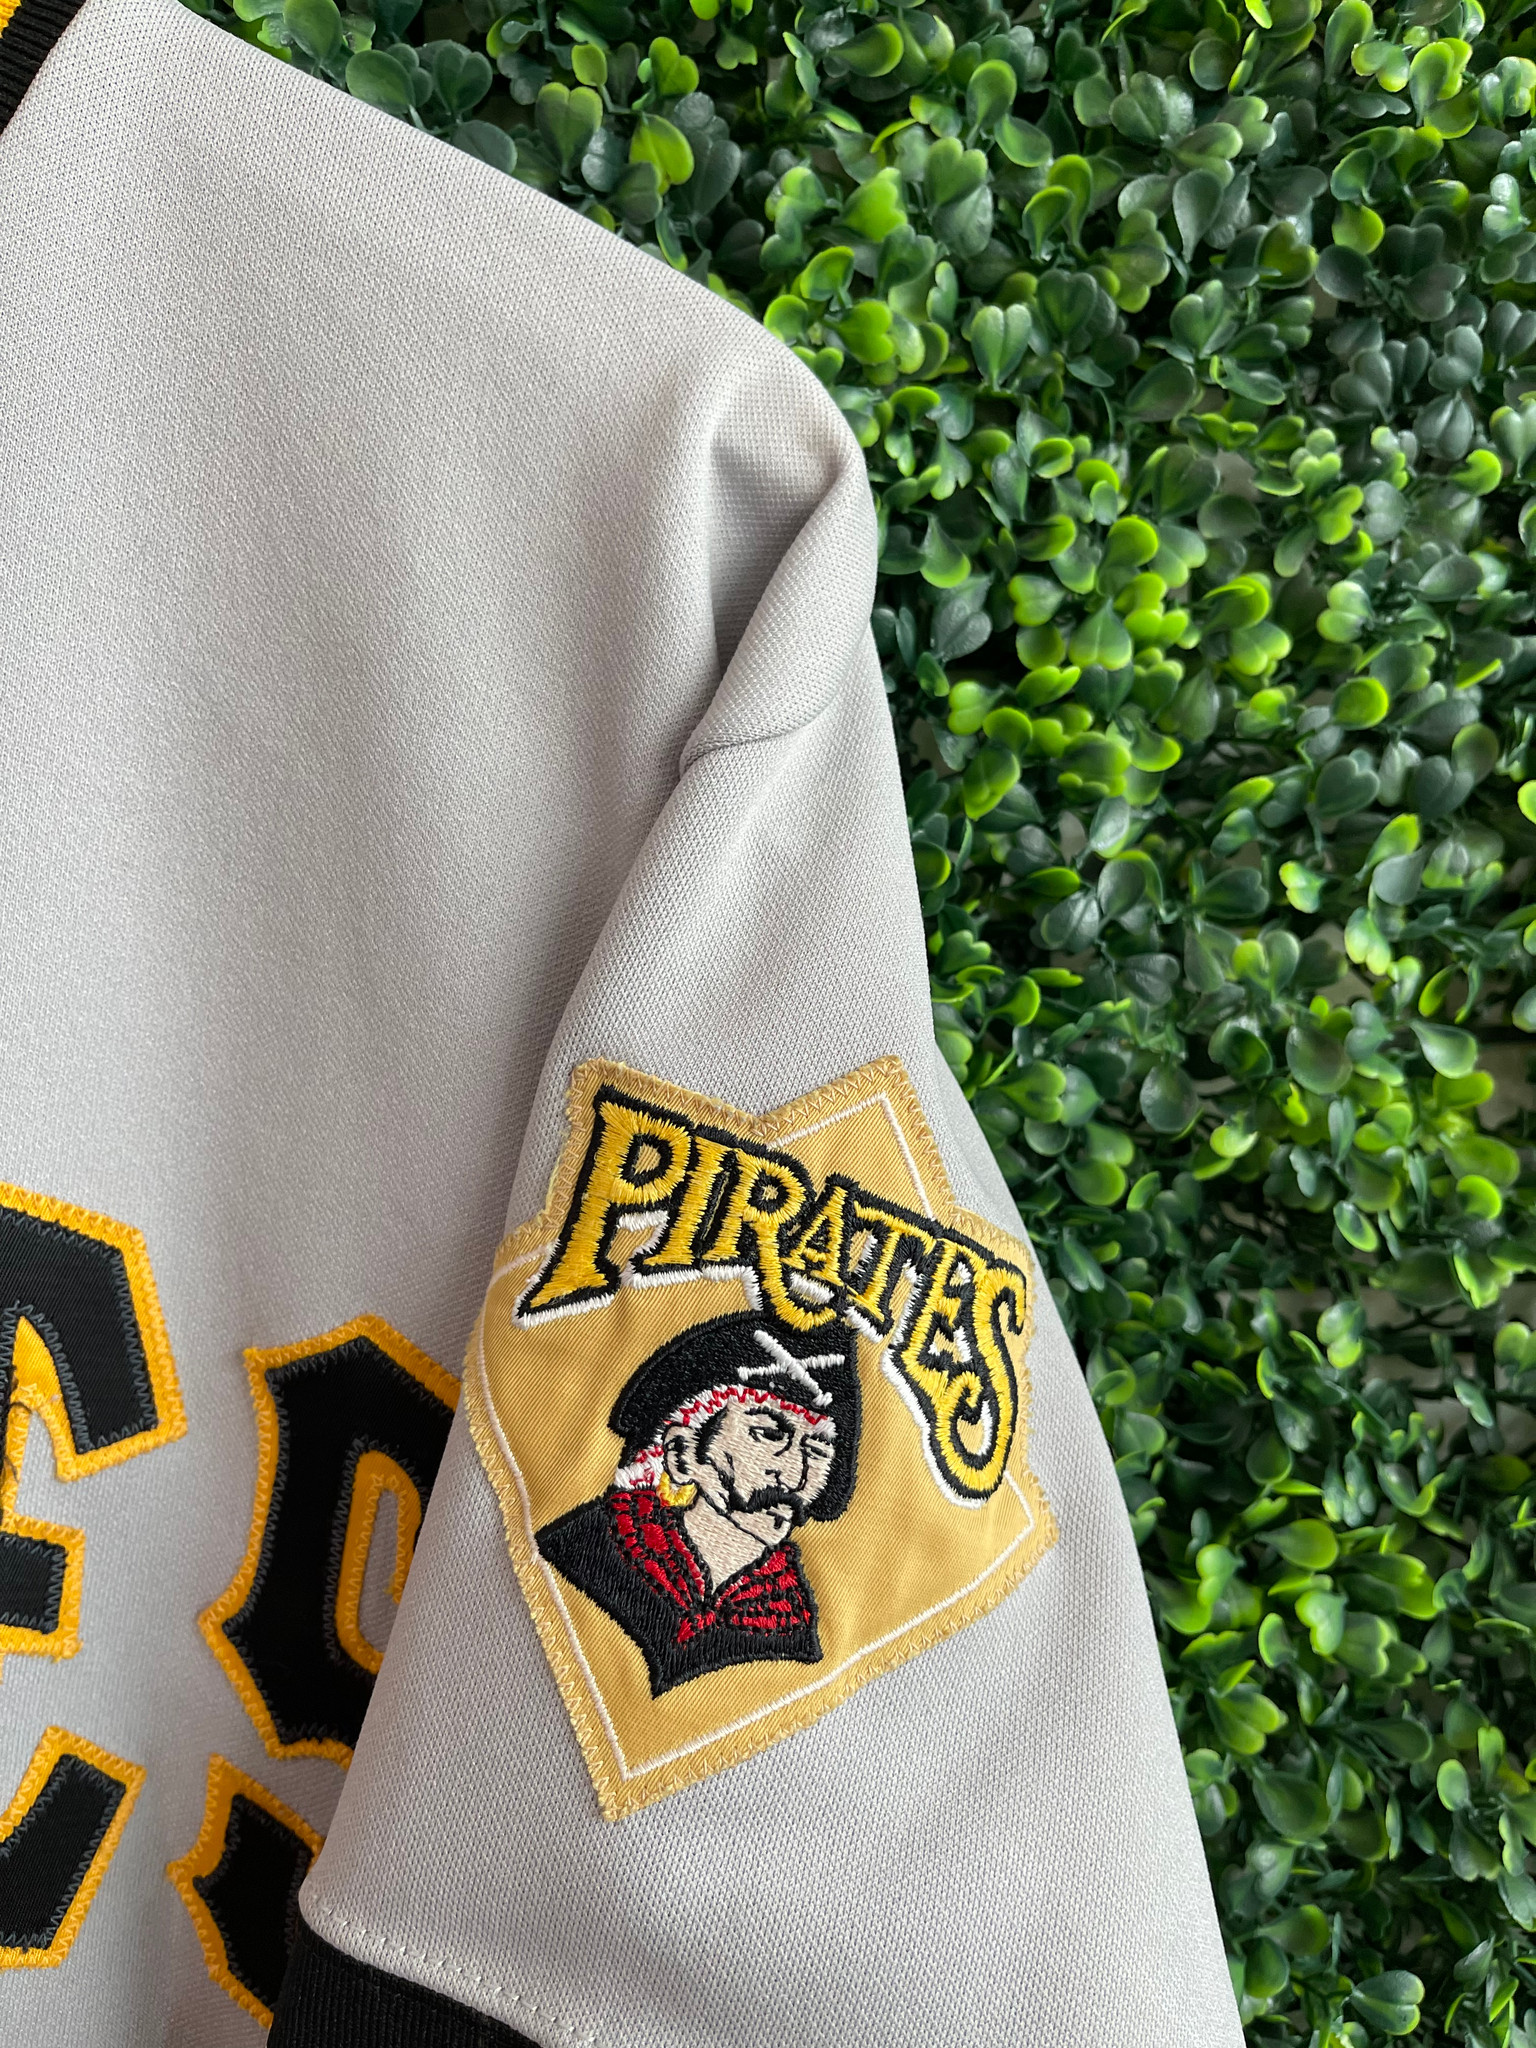 Vintage Pittsburgh Pirates Baseball Jacket